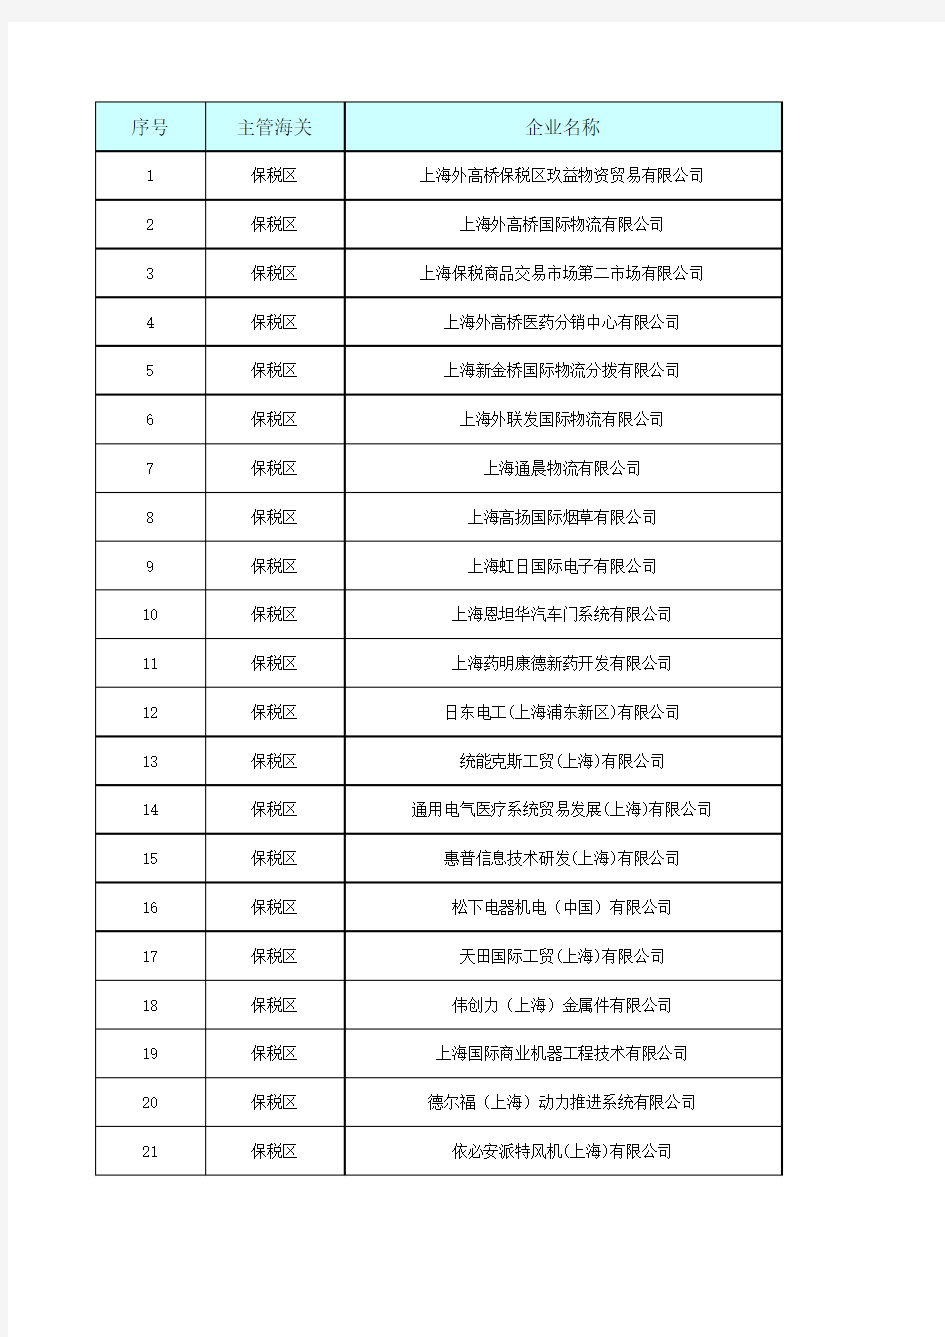 截止到20130201上海海关AA类企业名单